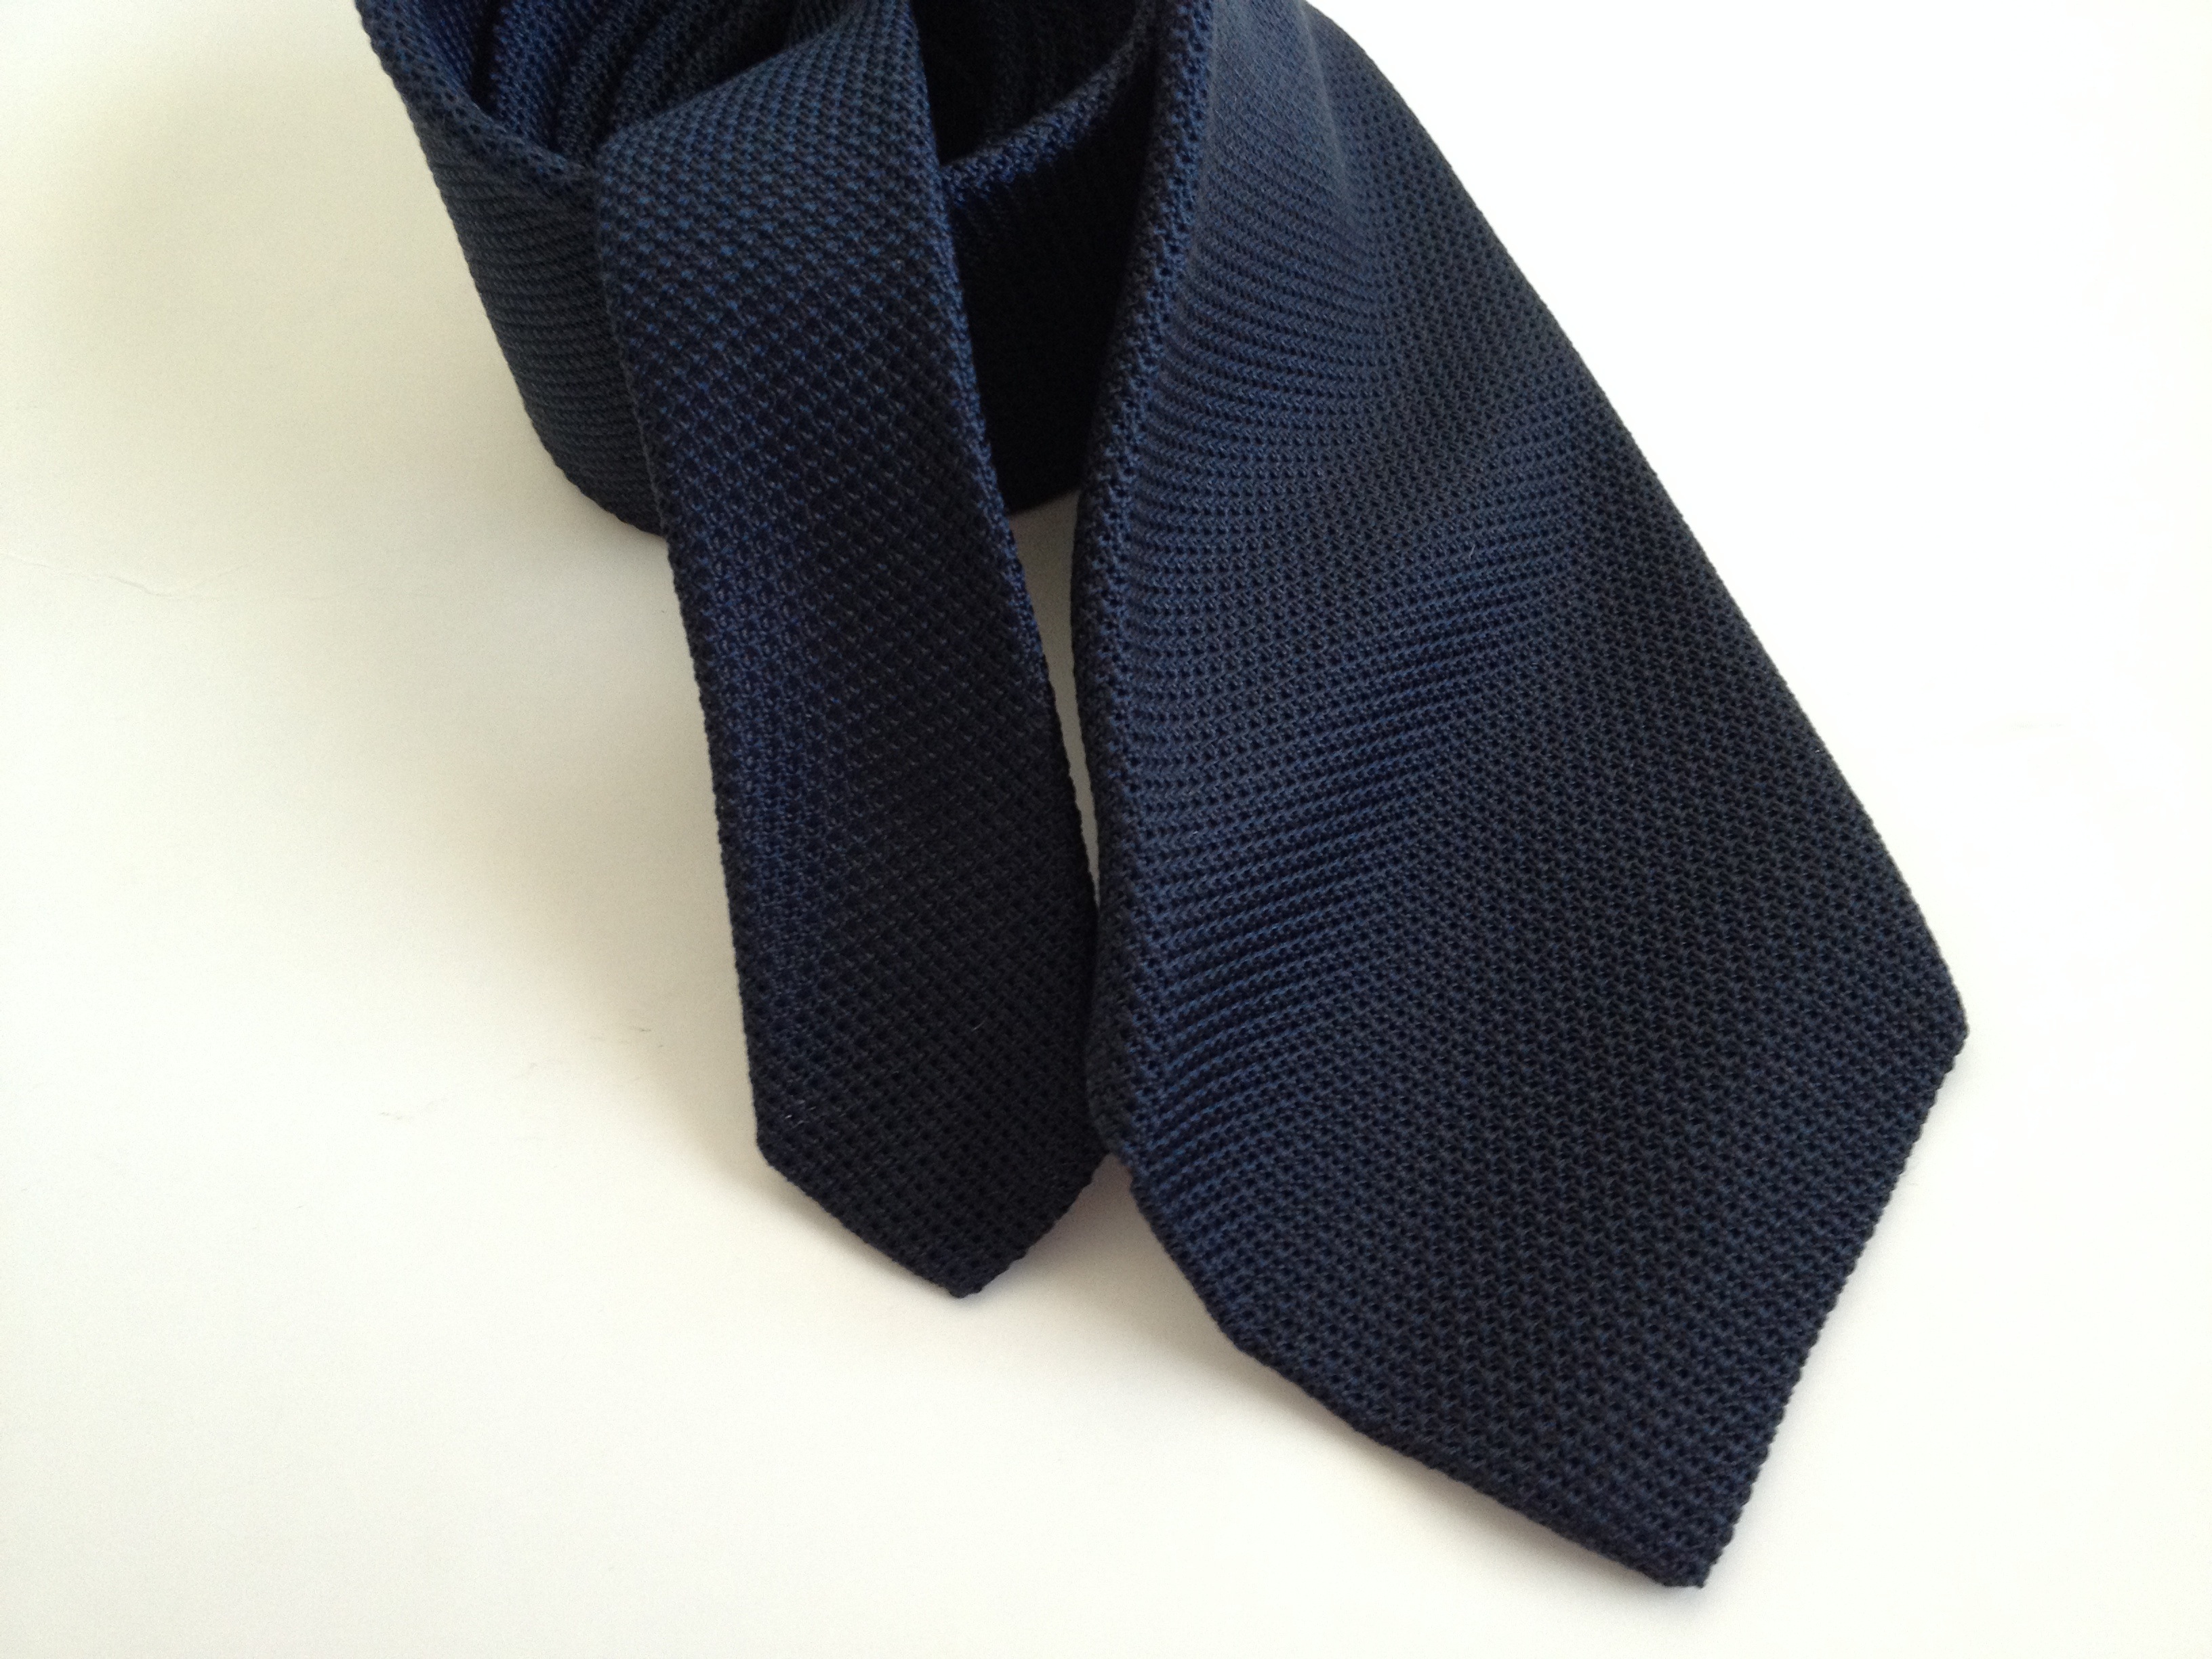 Тёмно-синий вязаный галстук с острым низом универсален, так как подходит к костюму любой степени формальности (кроме смокинга, конечно)